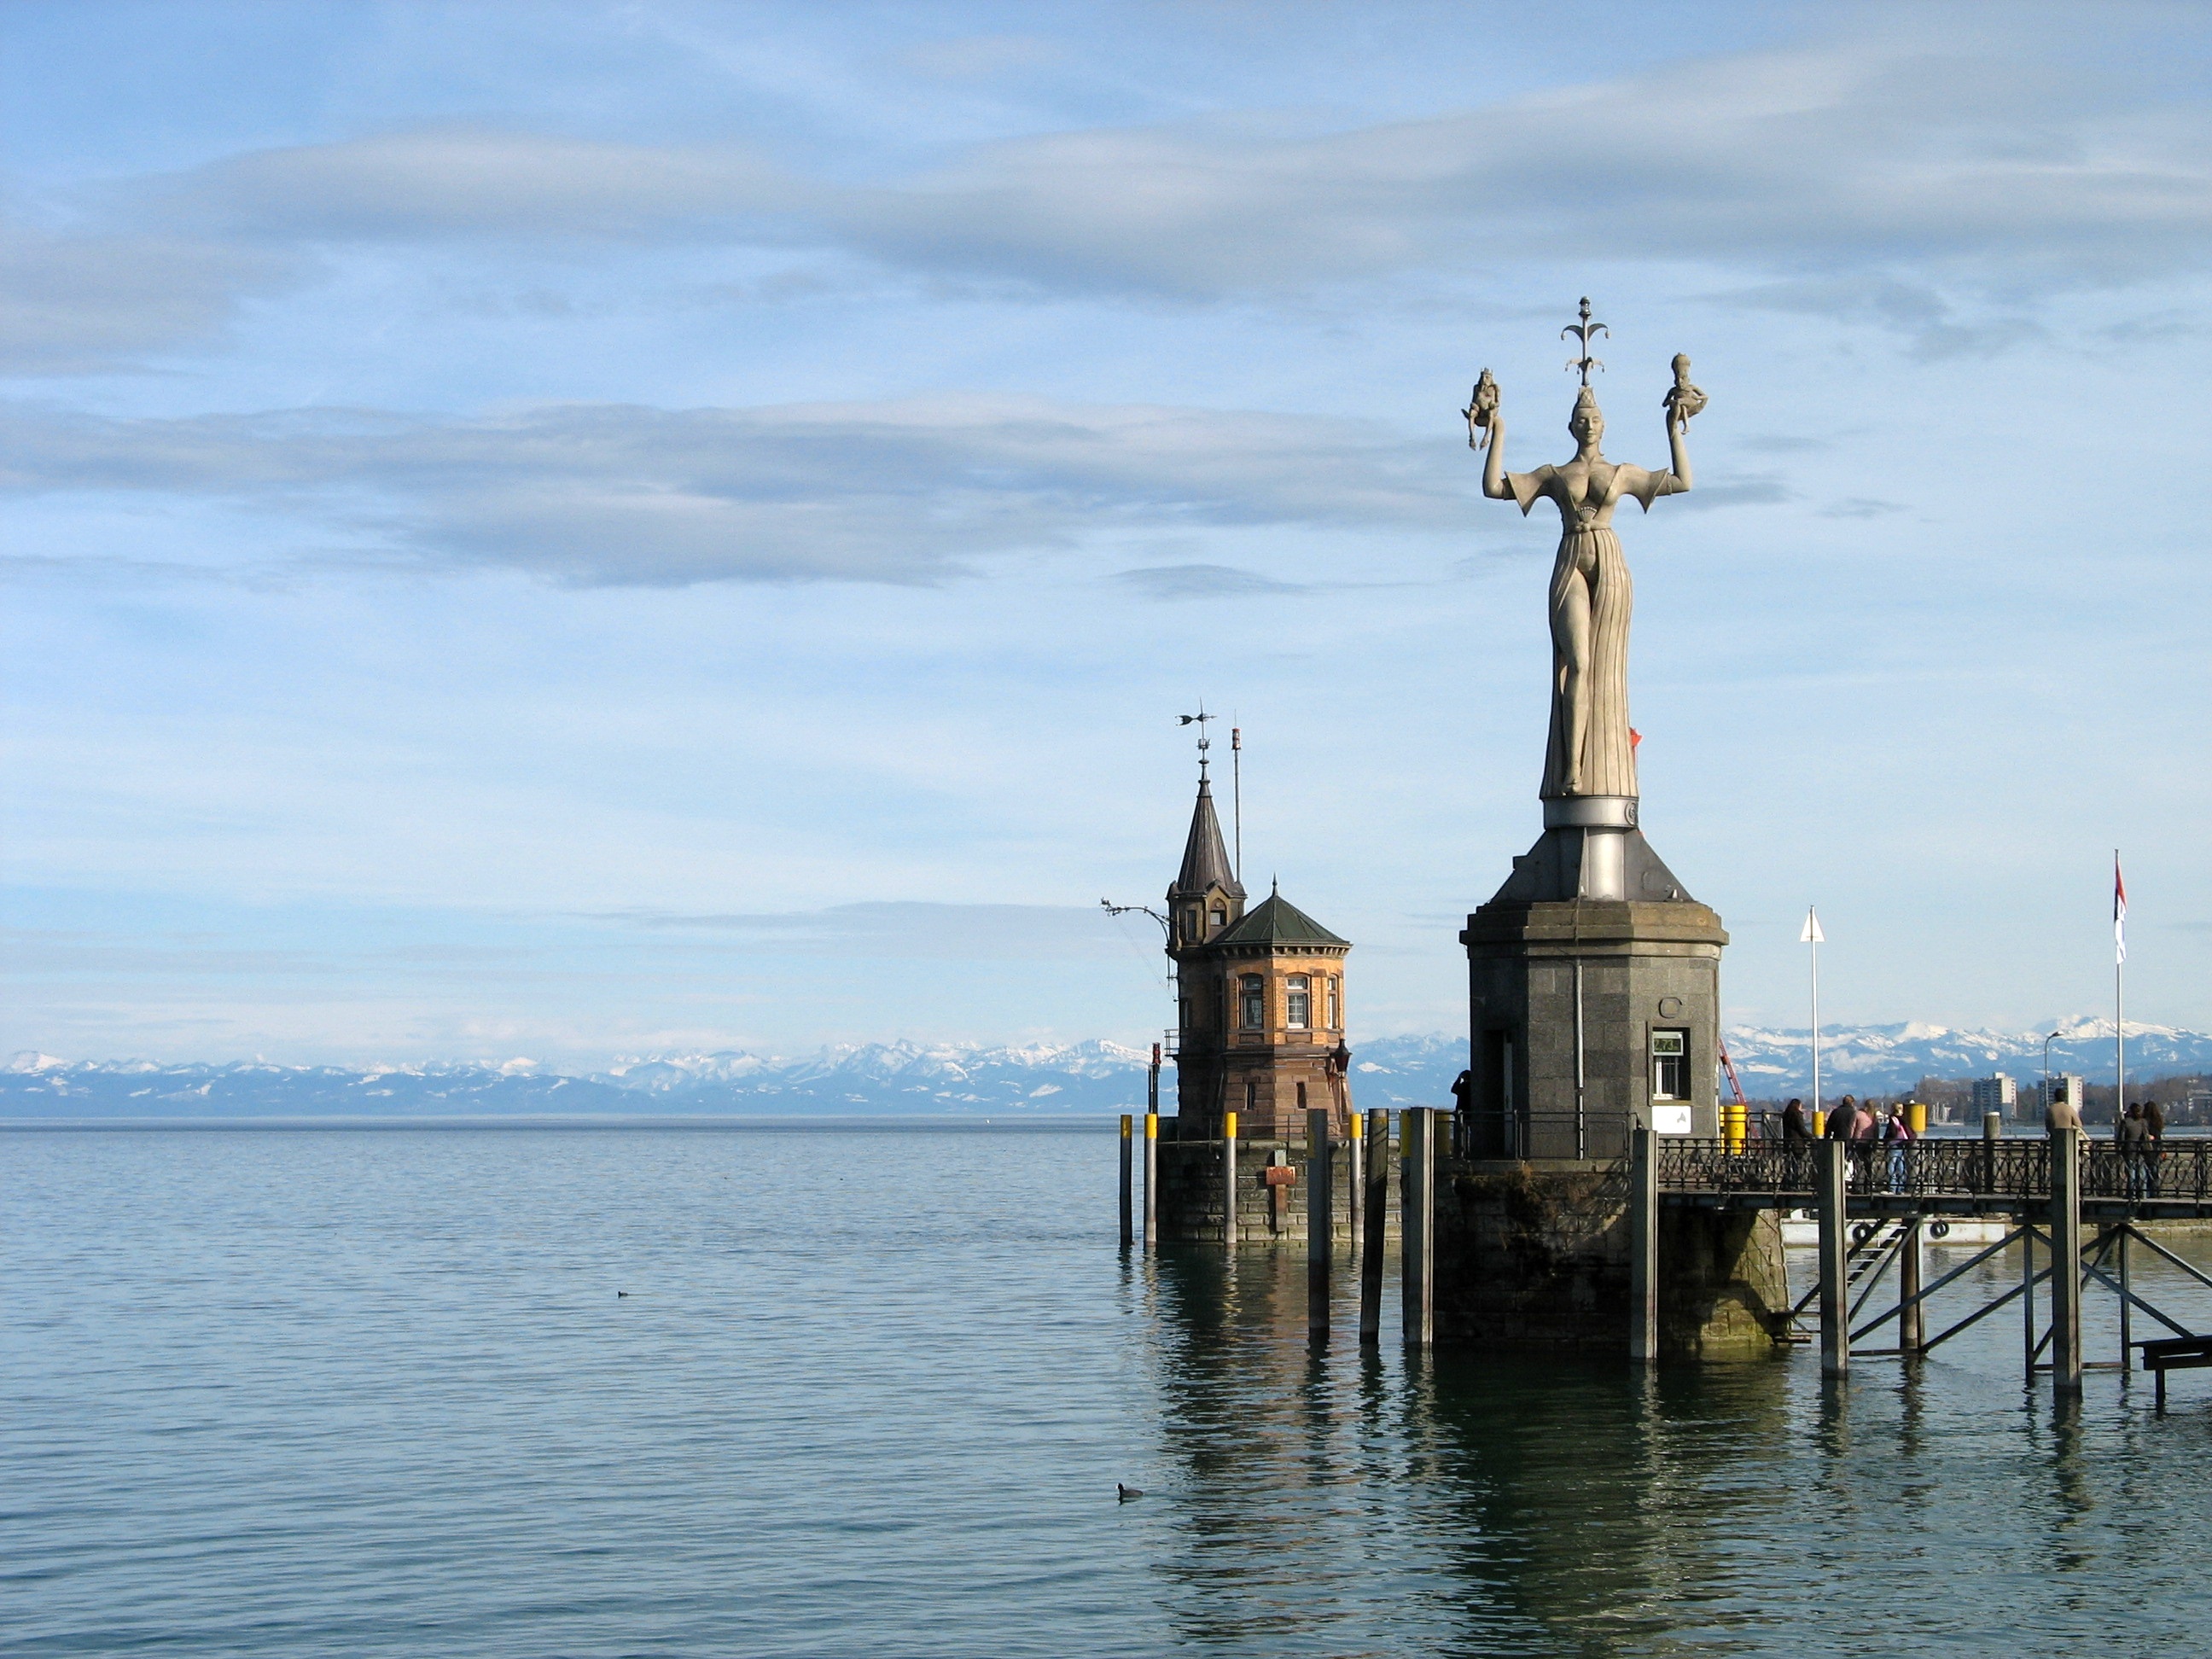 Imperia Statue (neun Meter hoch, 18 Tonnen schwer, dreht sich) im Hafen von Konstanz am Bodensee, 2006